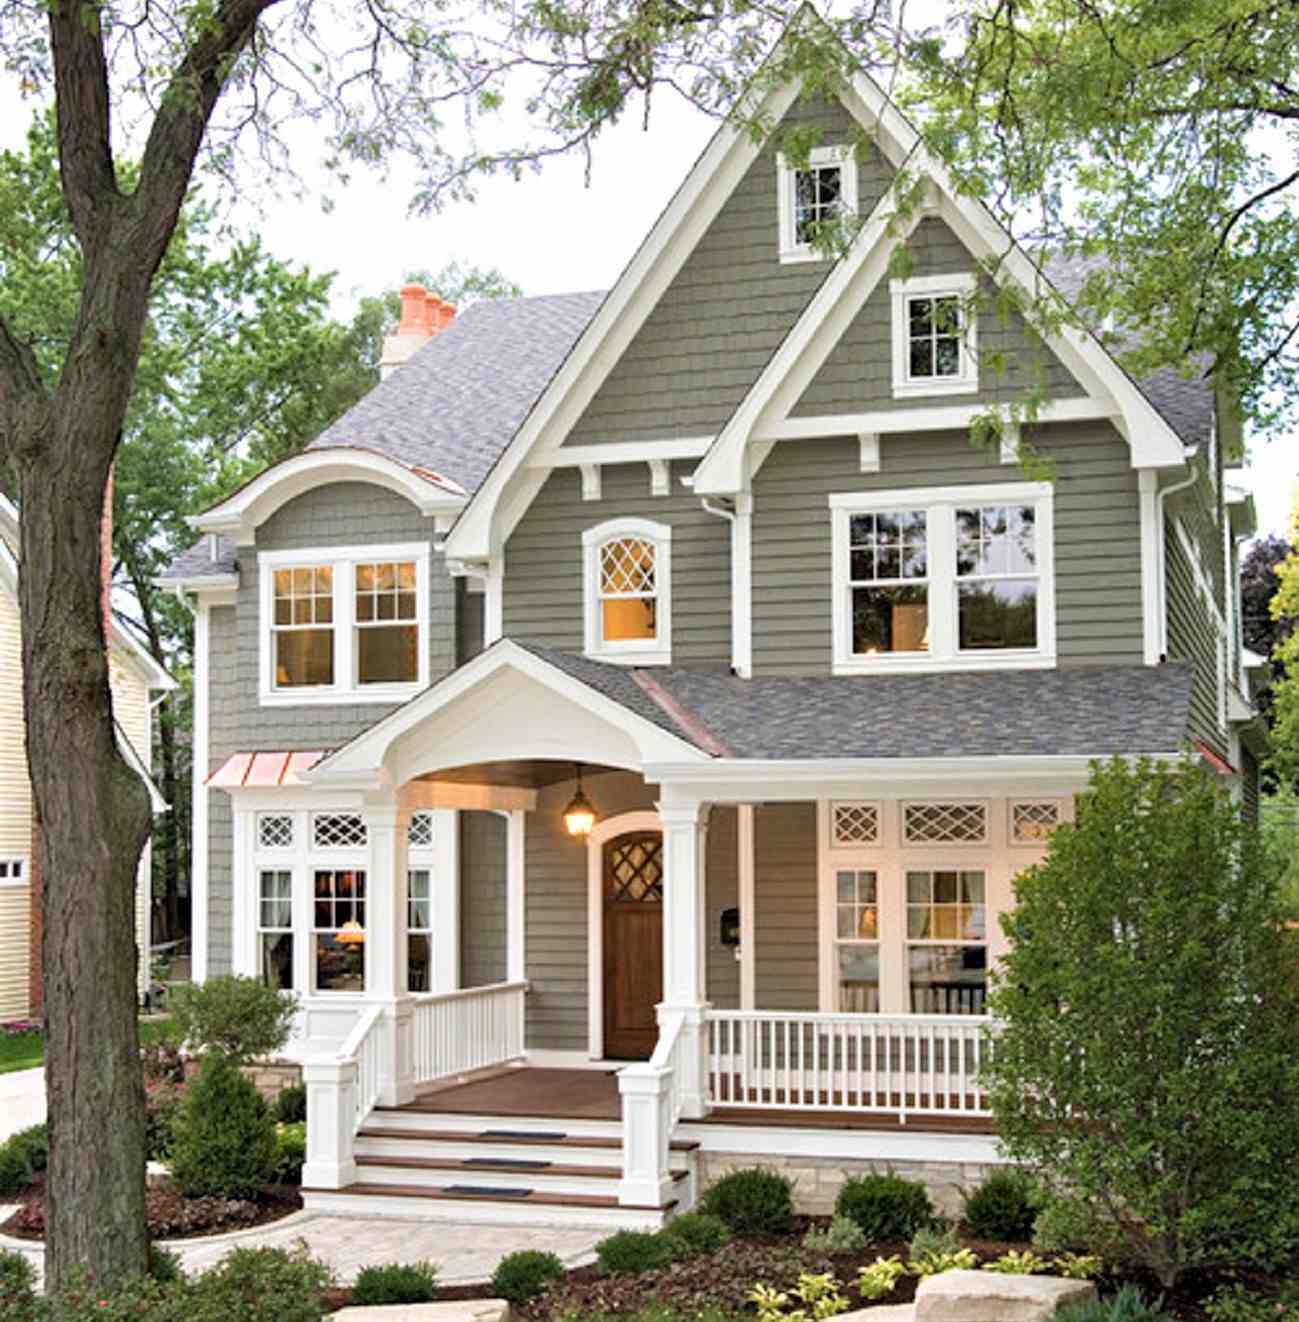 اللون الخارجي للمنزل باللون الرمادي الداكن مع زخرفة بيضاء